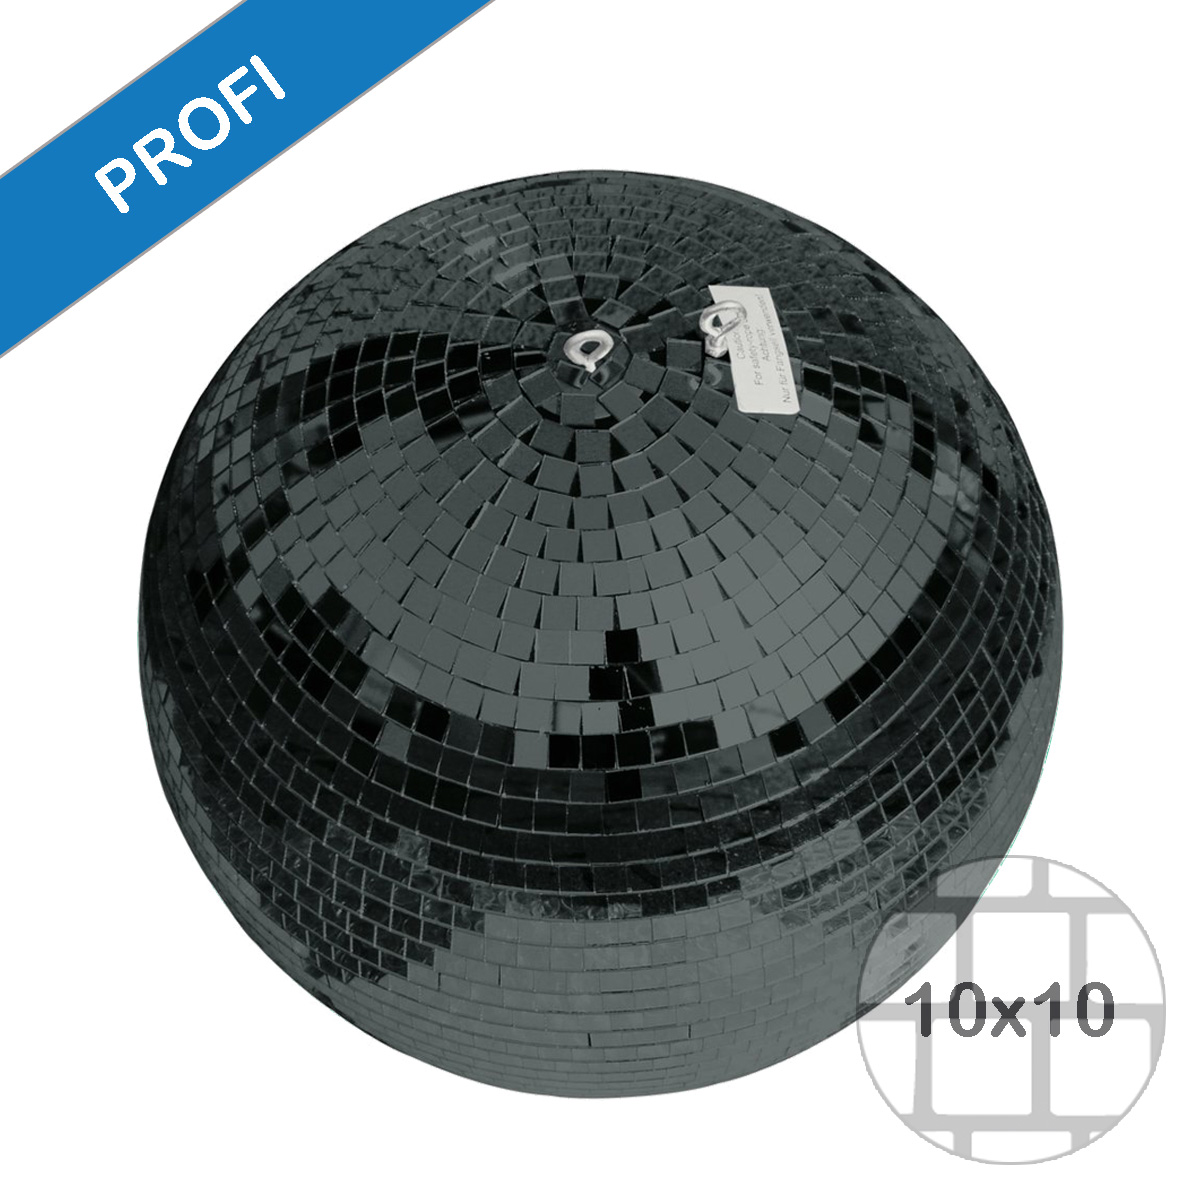 Spiegelkugel 40cm schwarz- Diskokugel (Discokugel) Party Lichteffekt - Echtglas - mirrorball safety black color